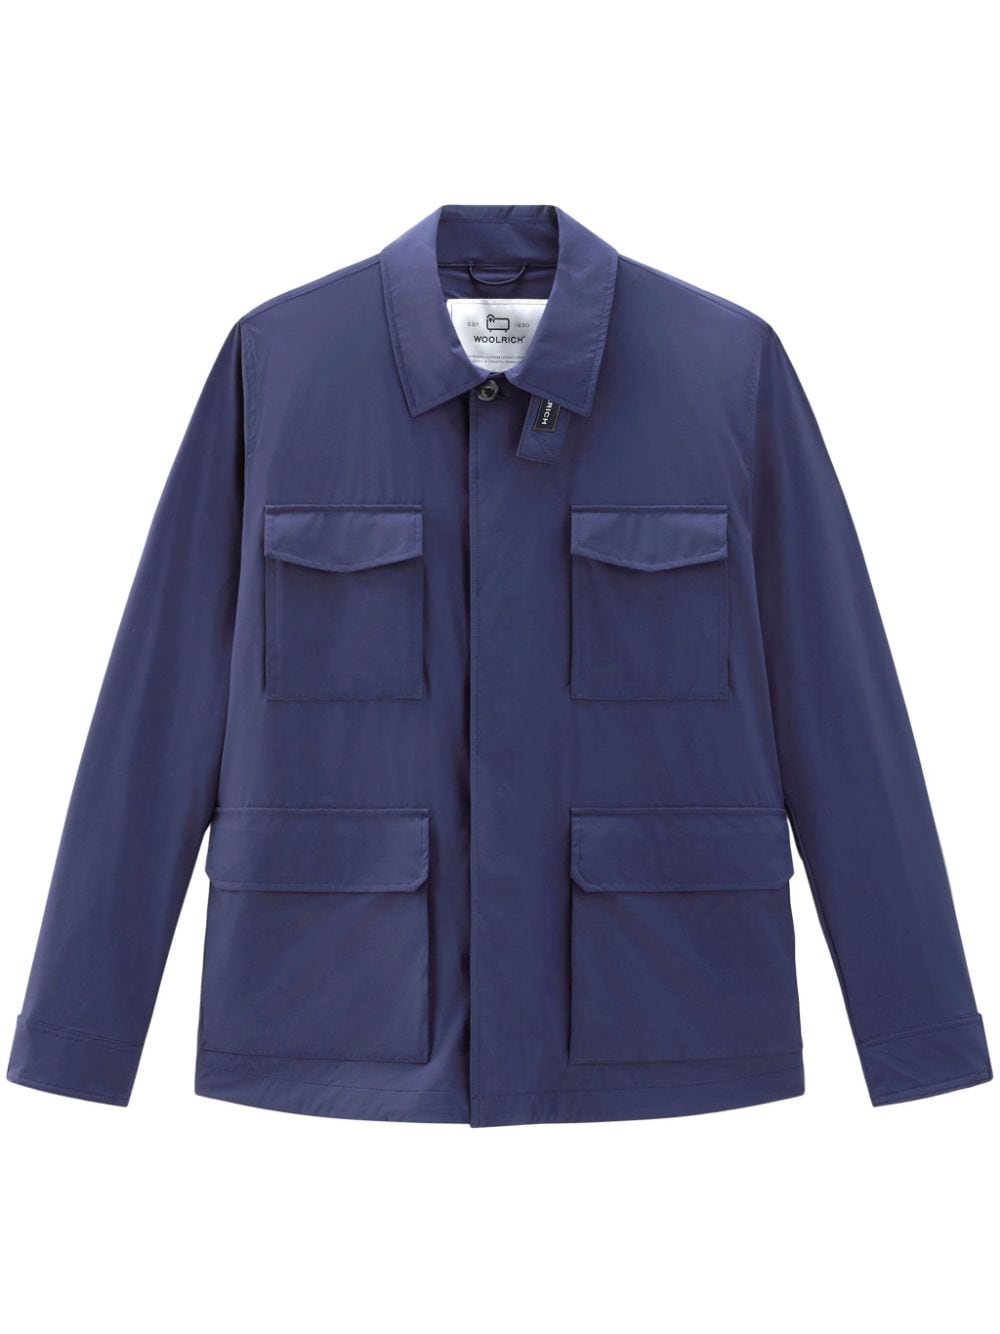 Woolrich Field shirt jacket - Blue von Woolrich